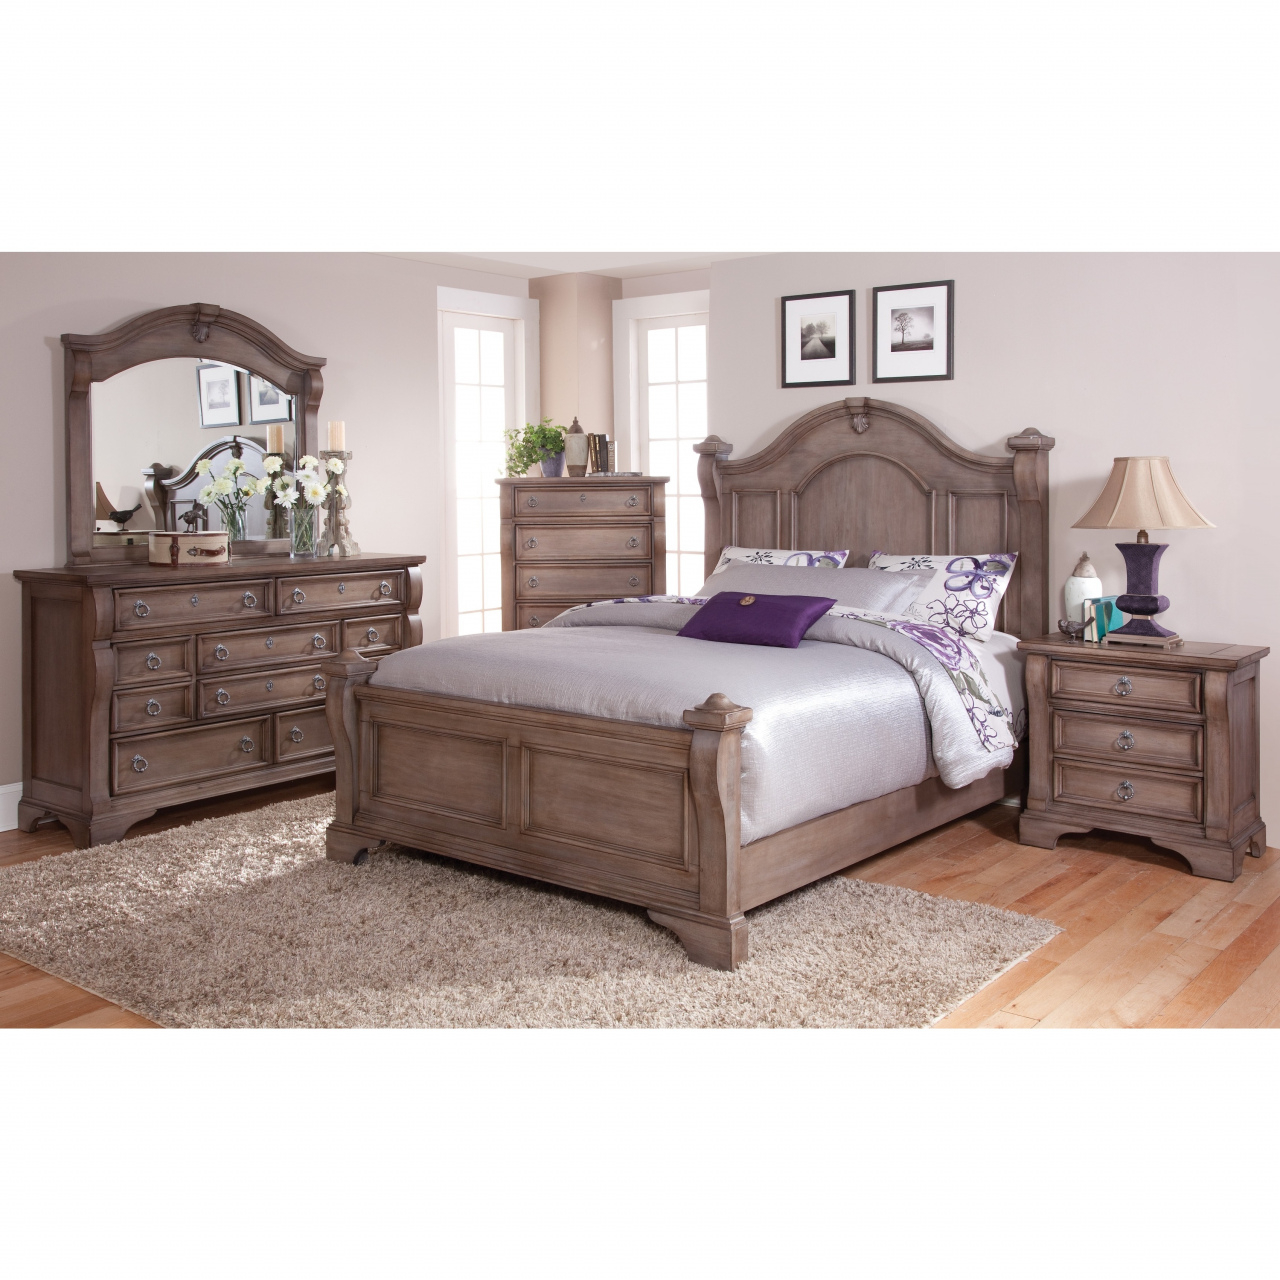 Sam Levitz Queen Bedroom Sets Bedroom Furniture Rockville Md in measurements 1280 X 1280